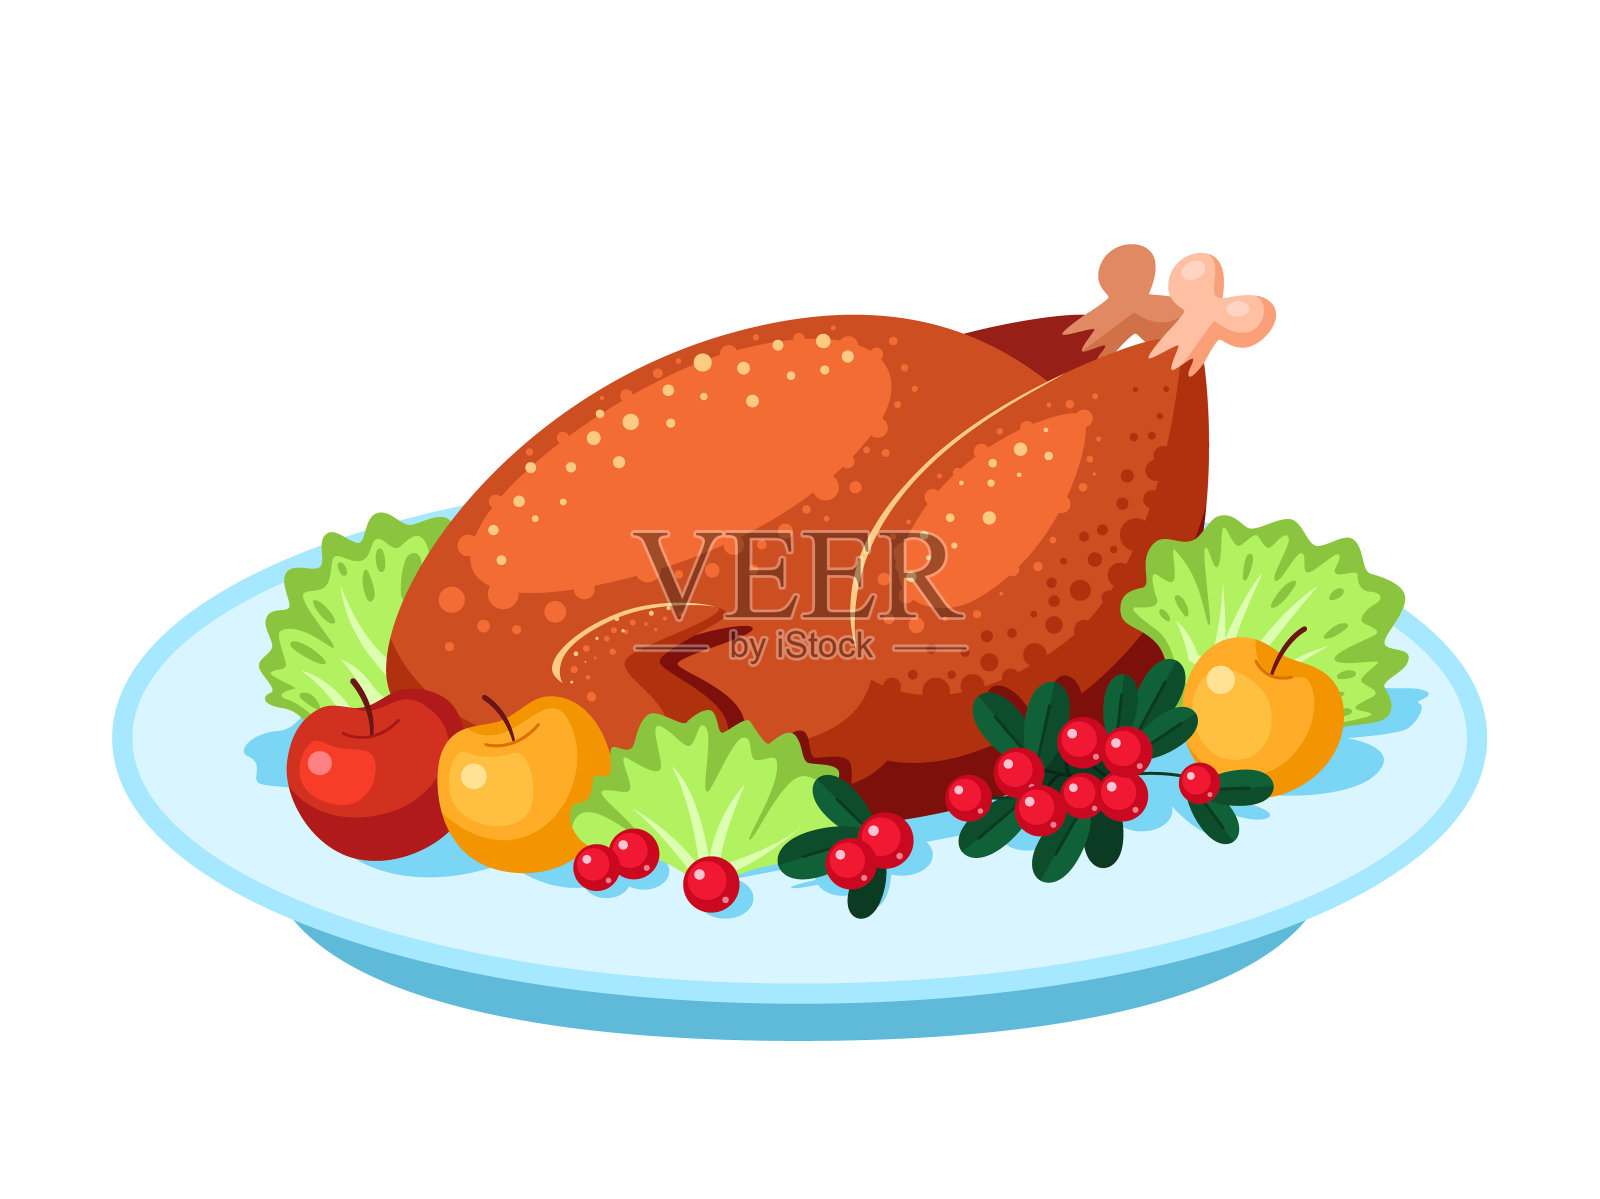 节日晚宴上的烤火鸡。感恩节和圣诞节的传统菜肴。孤立在白色背景上。设计元素图片